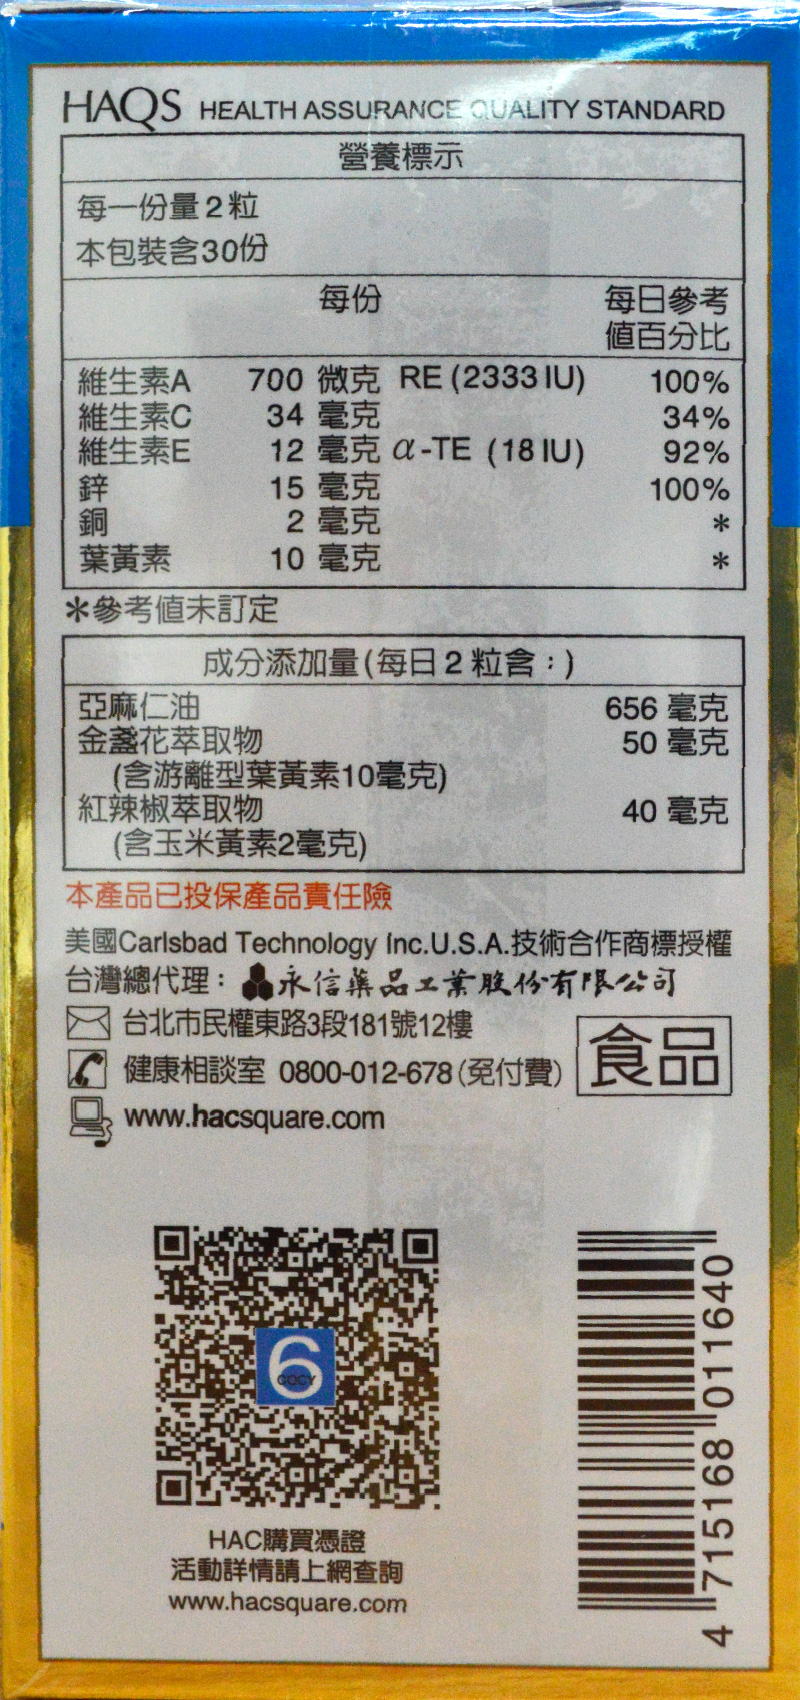 【永信HAC】複方葉黃素膠囊x6瓶(金盞花萃取物)(60粒)